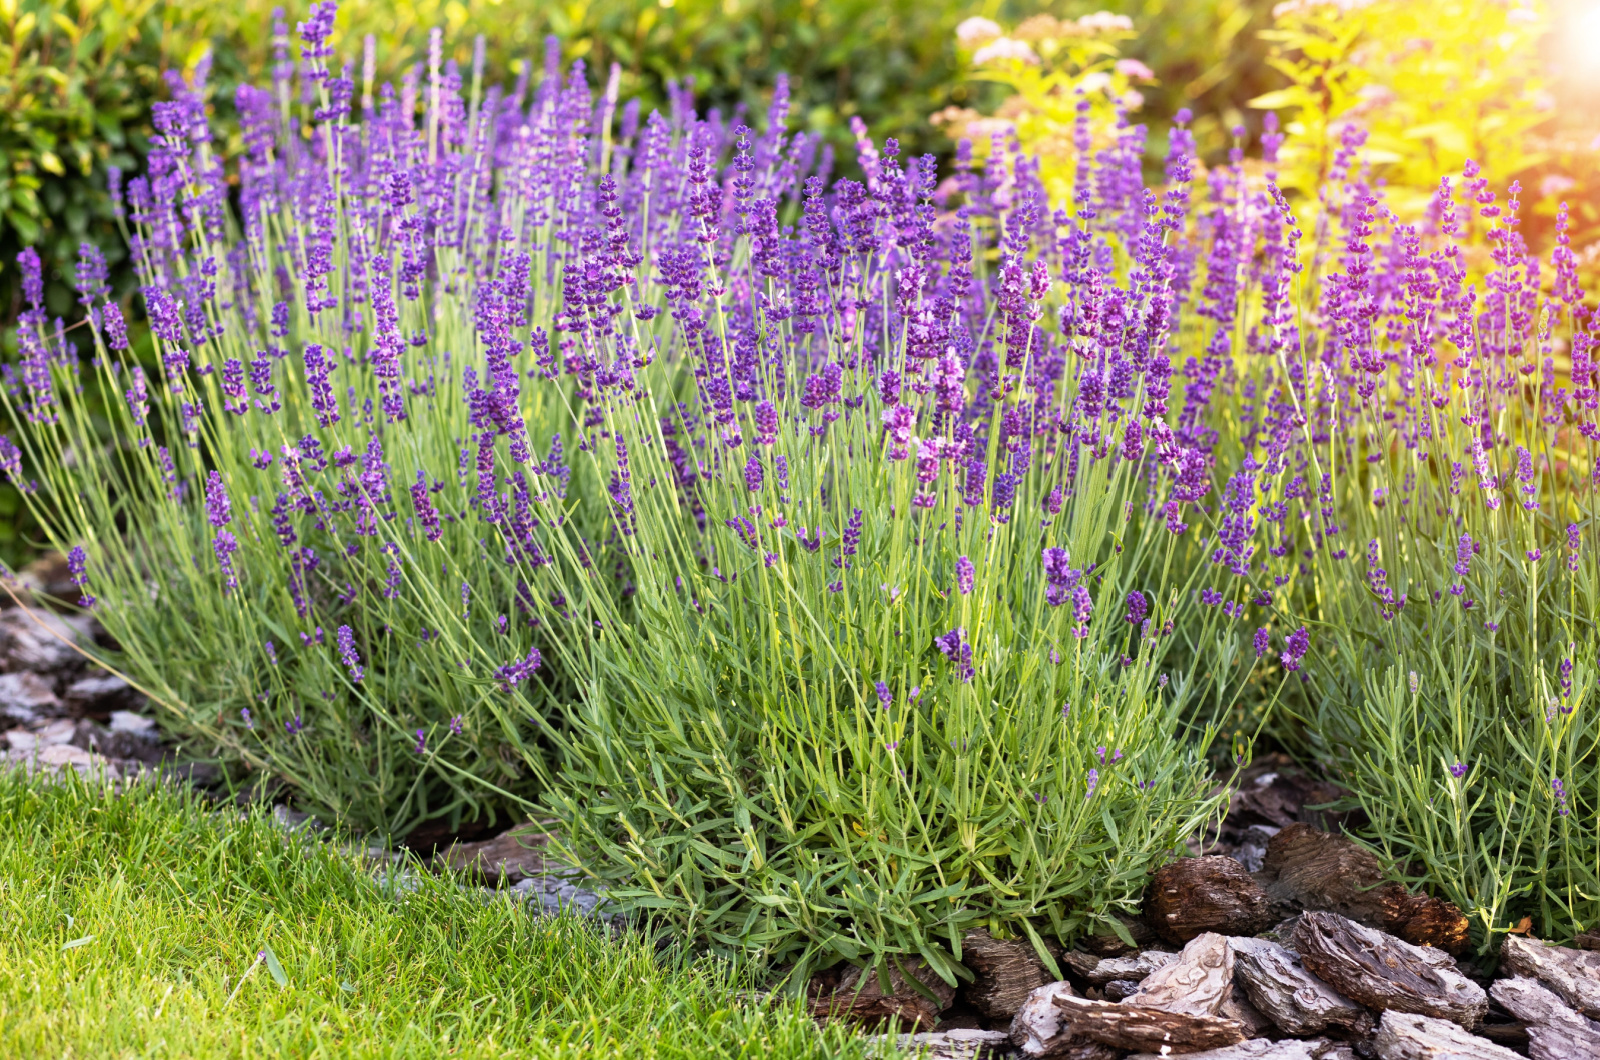 Purple lavender bushes